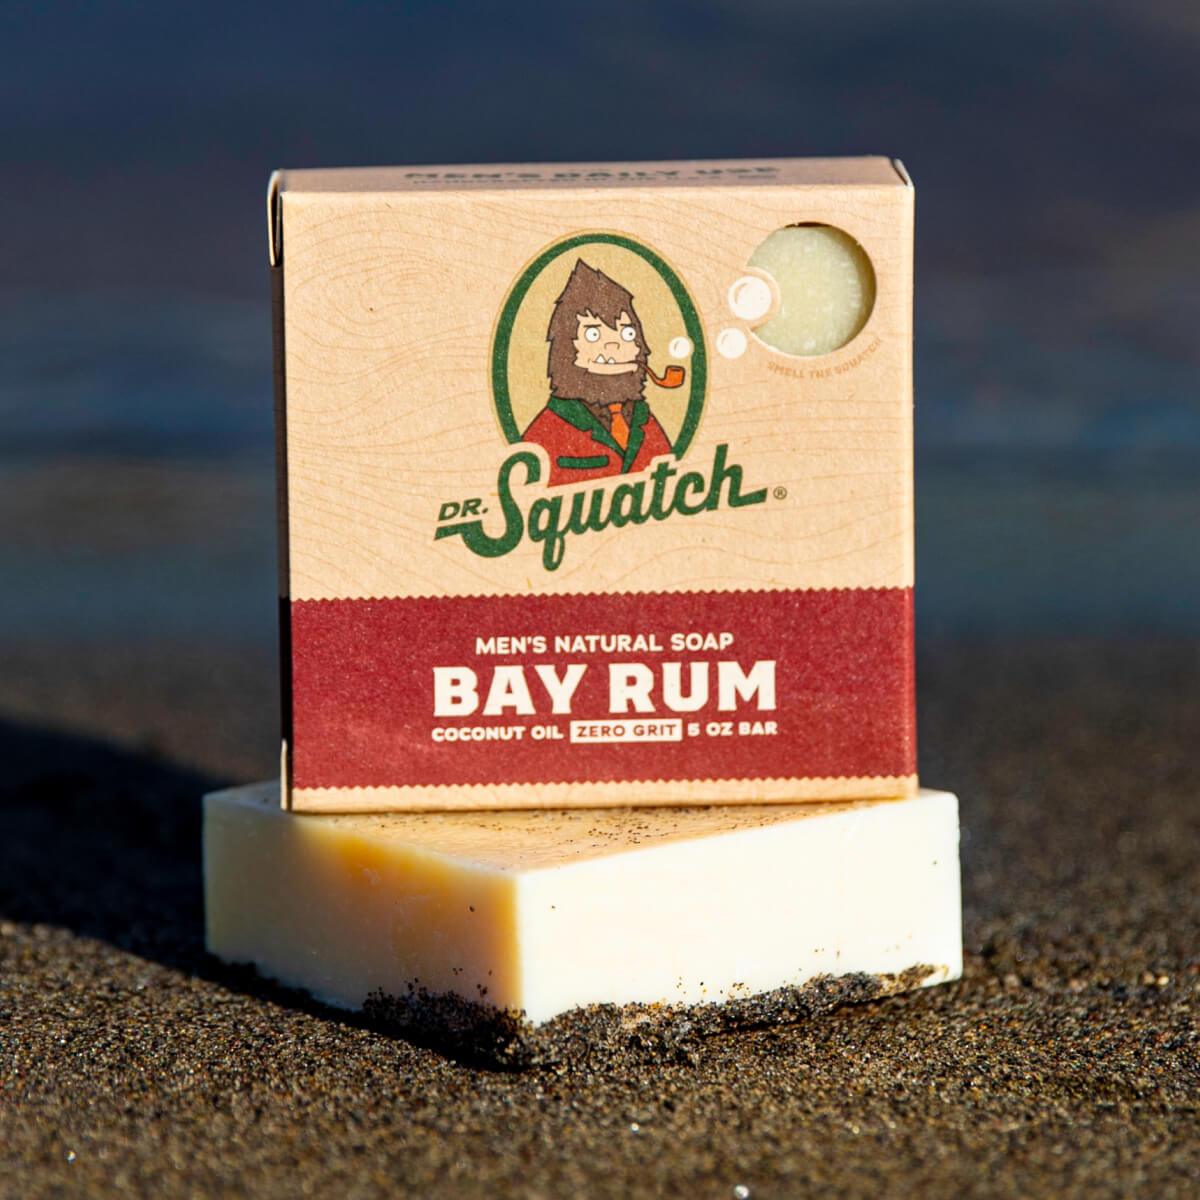 Bay Rum Beer Soap